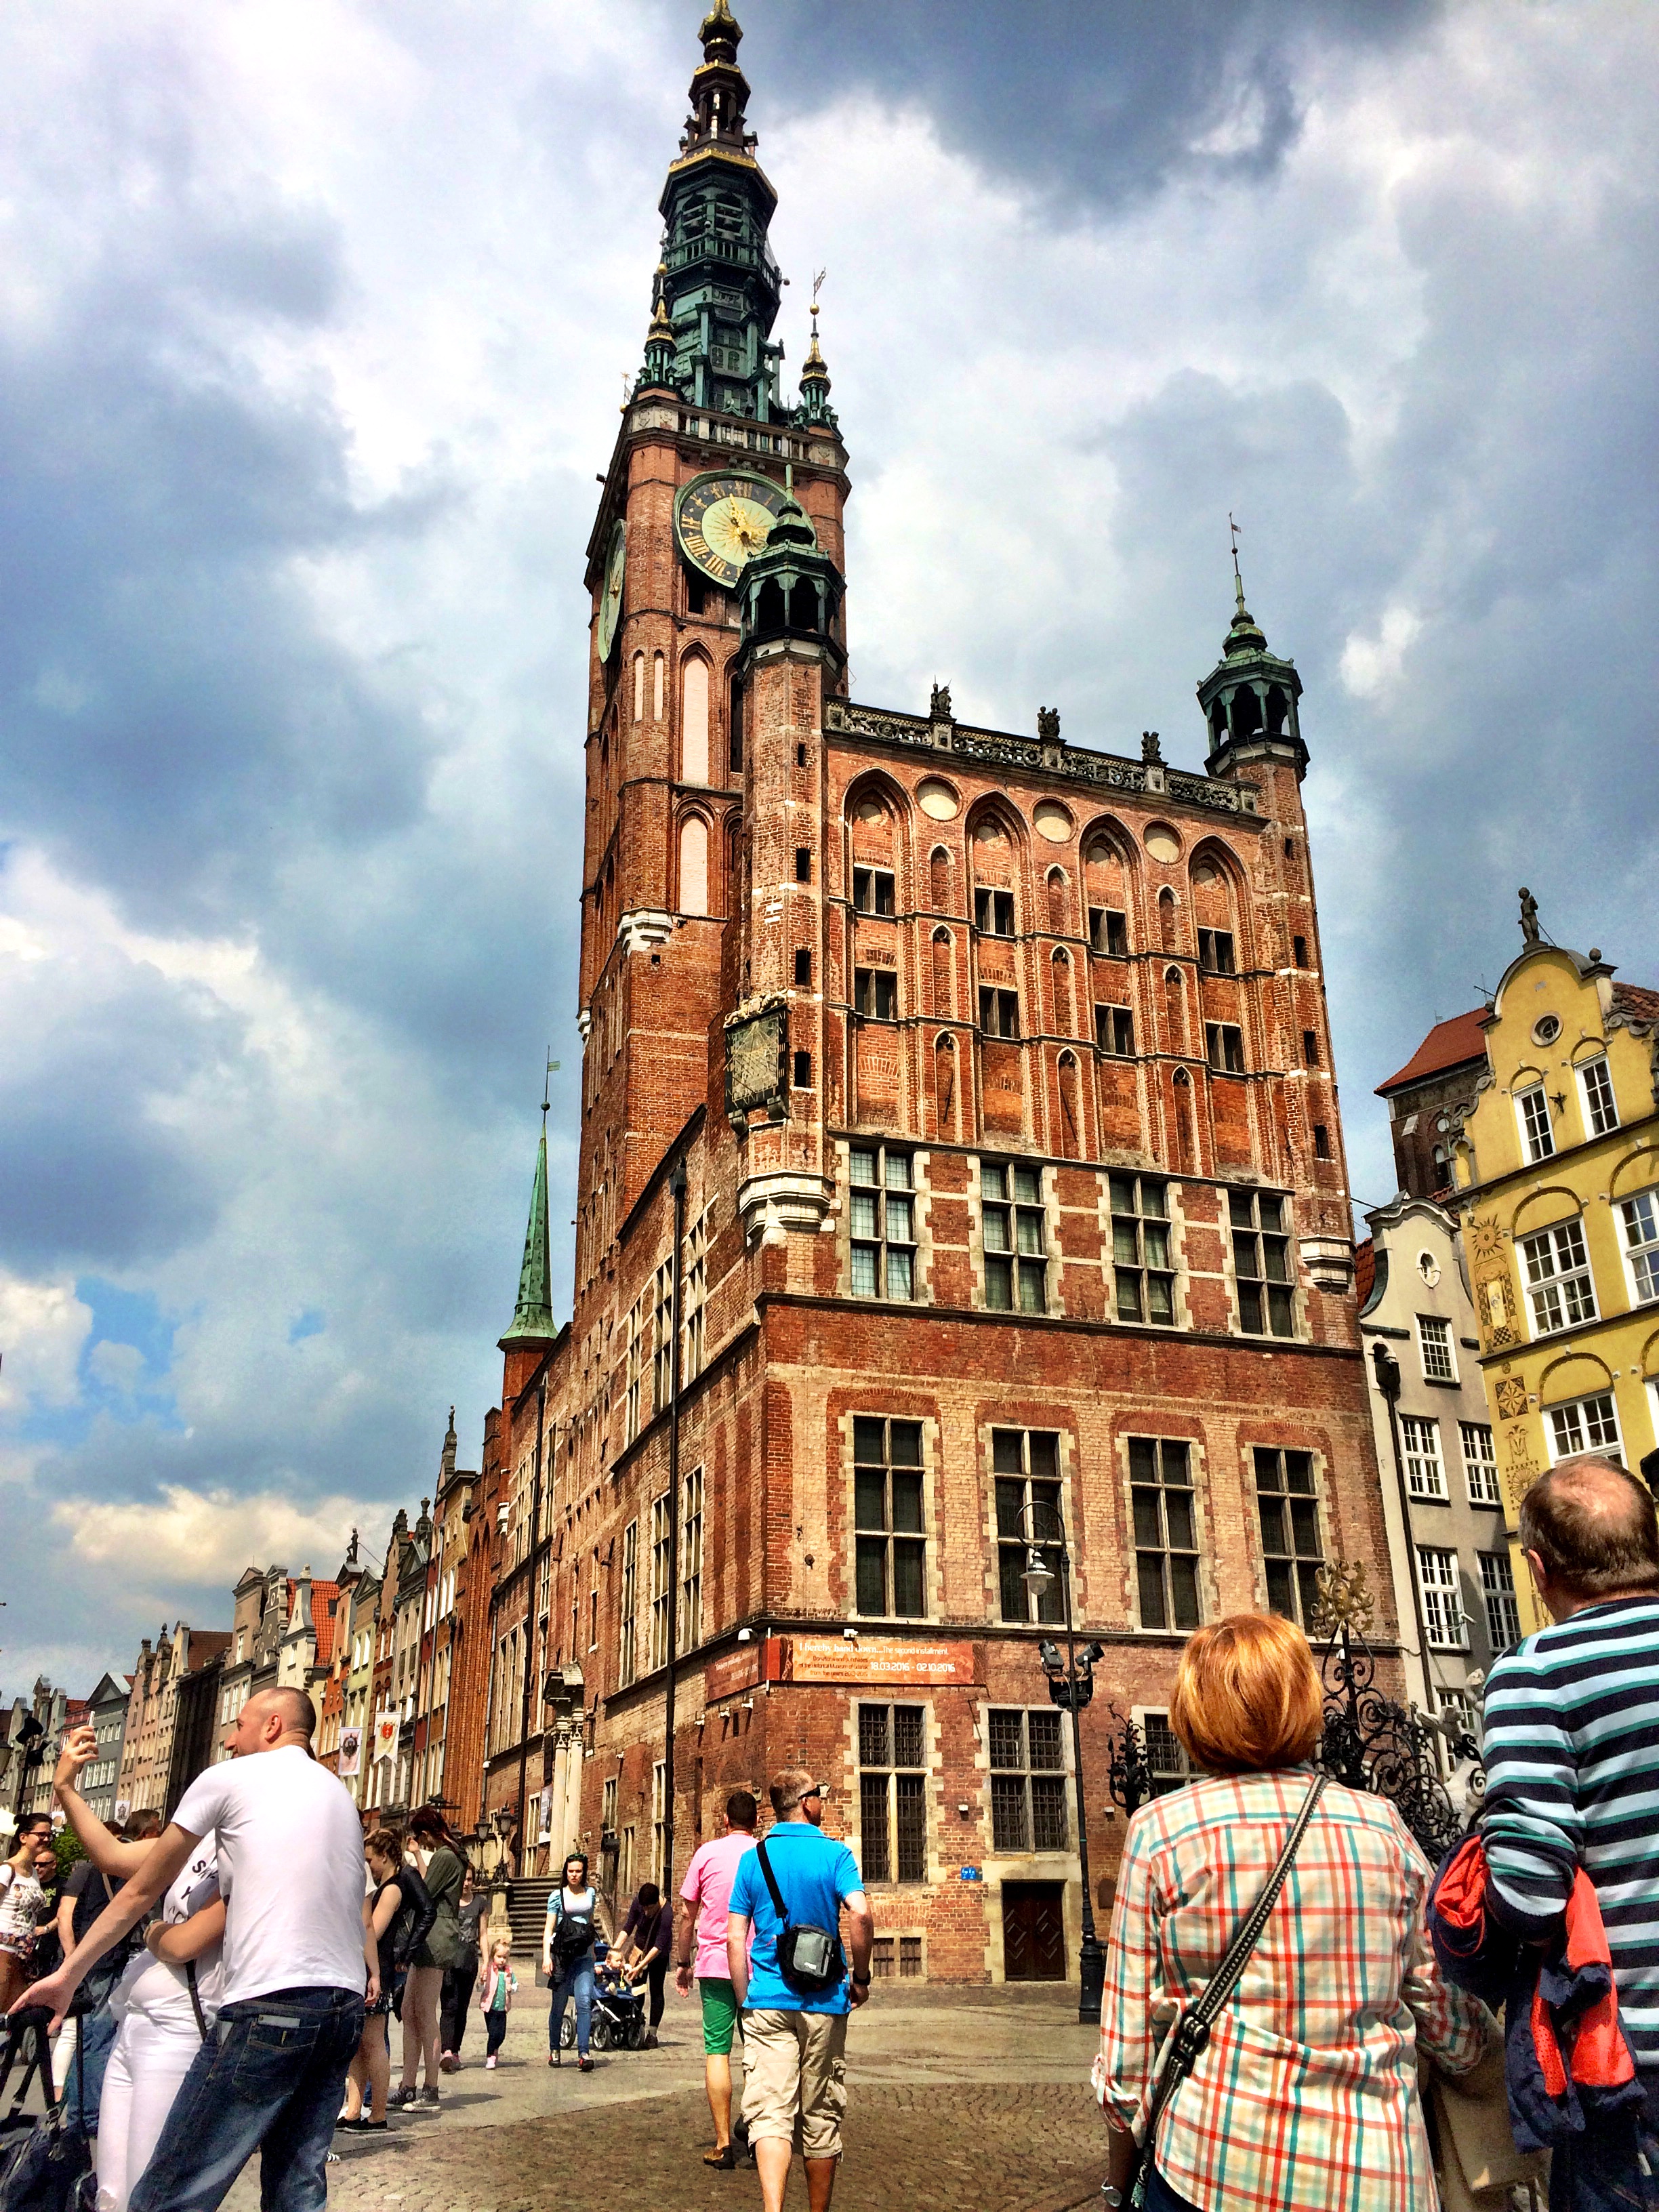 Gdansk – The City